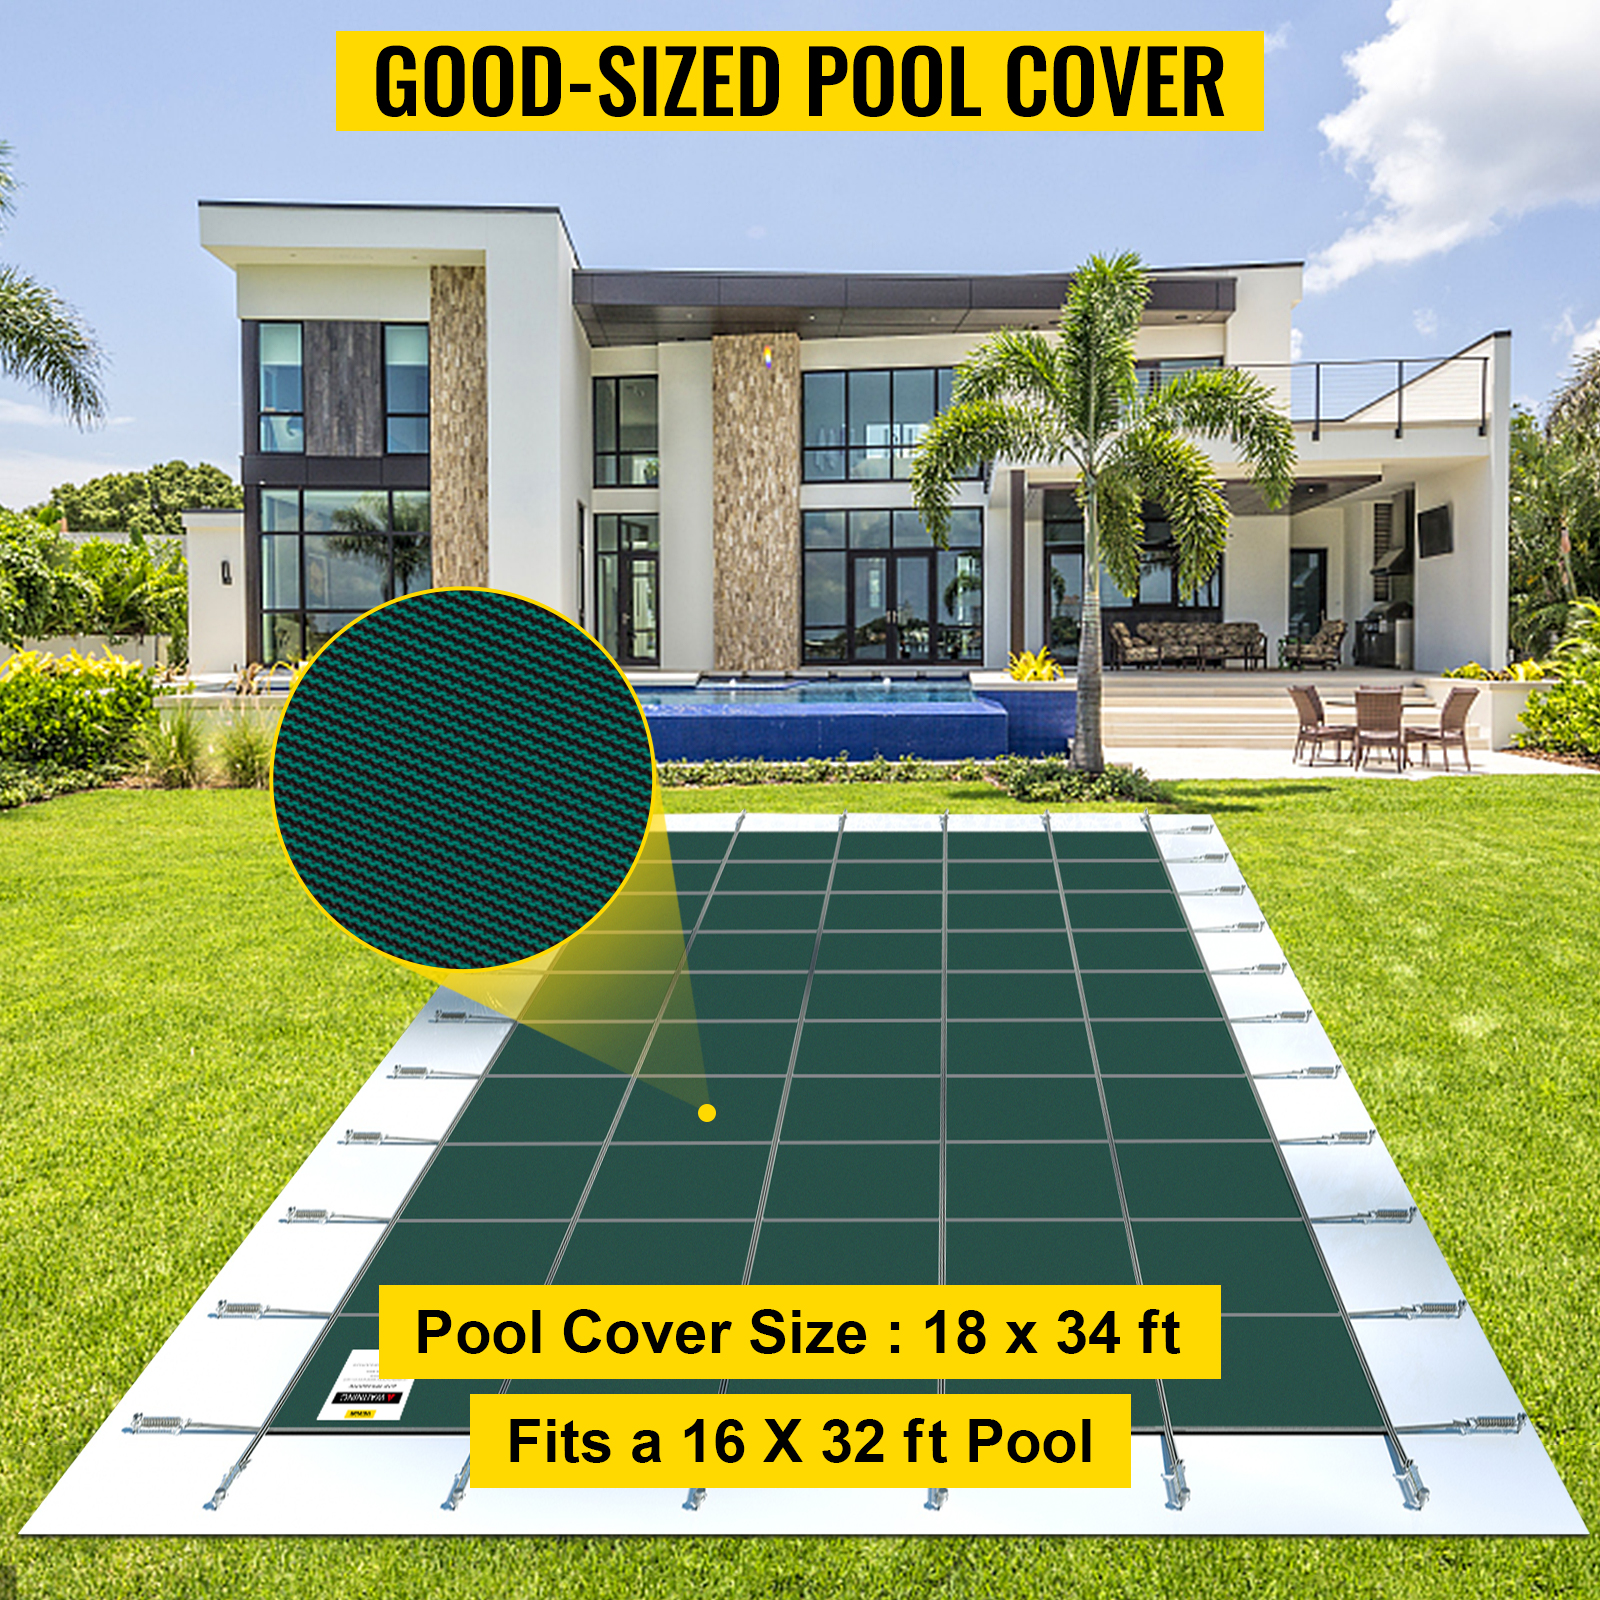 VEVOR téglalap alakú medencetakaró 4.87X9.75M zöld téli kültéri minden típusú medencéhez, például otthoni, kerti, szállodai, műszaki medencéhez, hogy jobban megvédje a medencéjét.